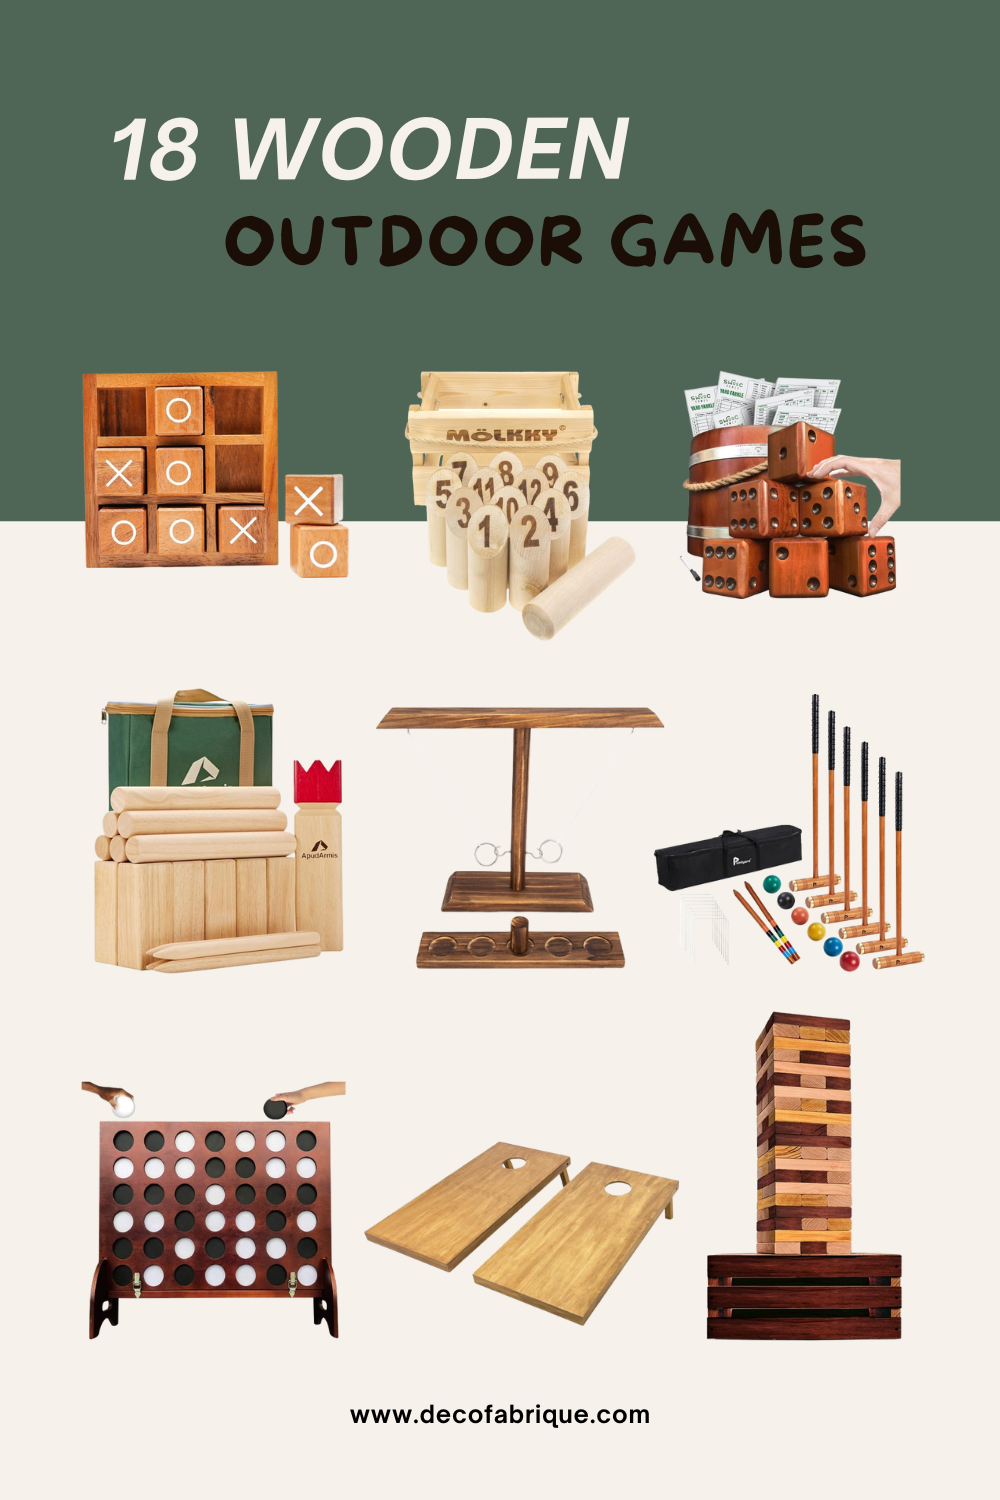 18 Wooden Outdoor Games